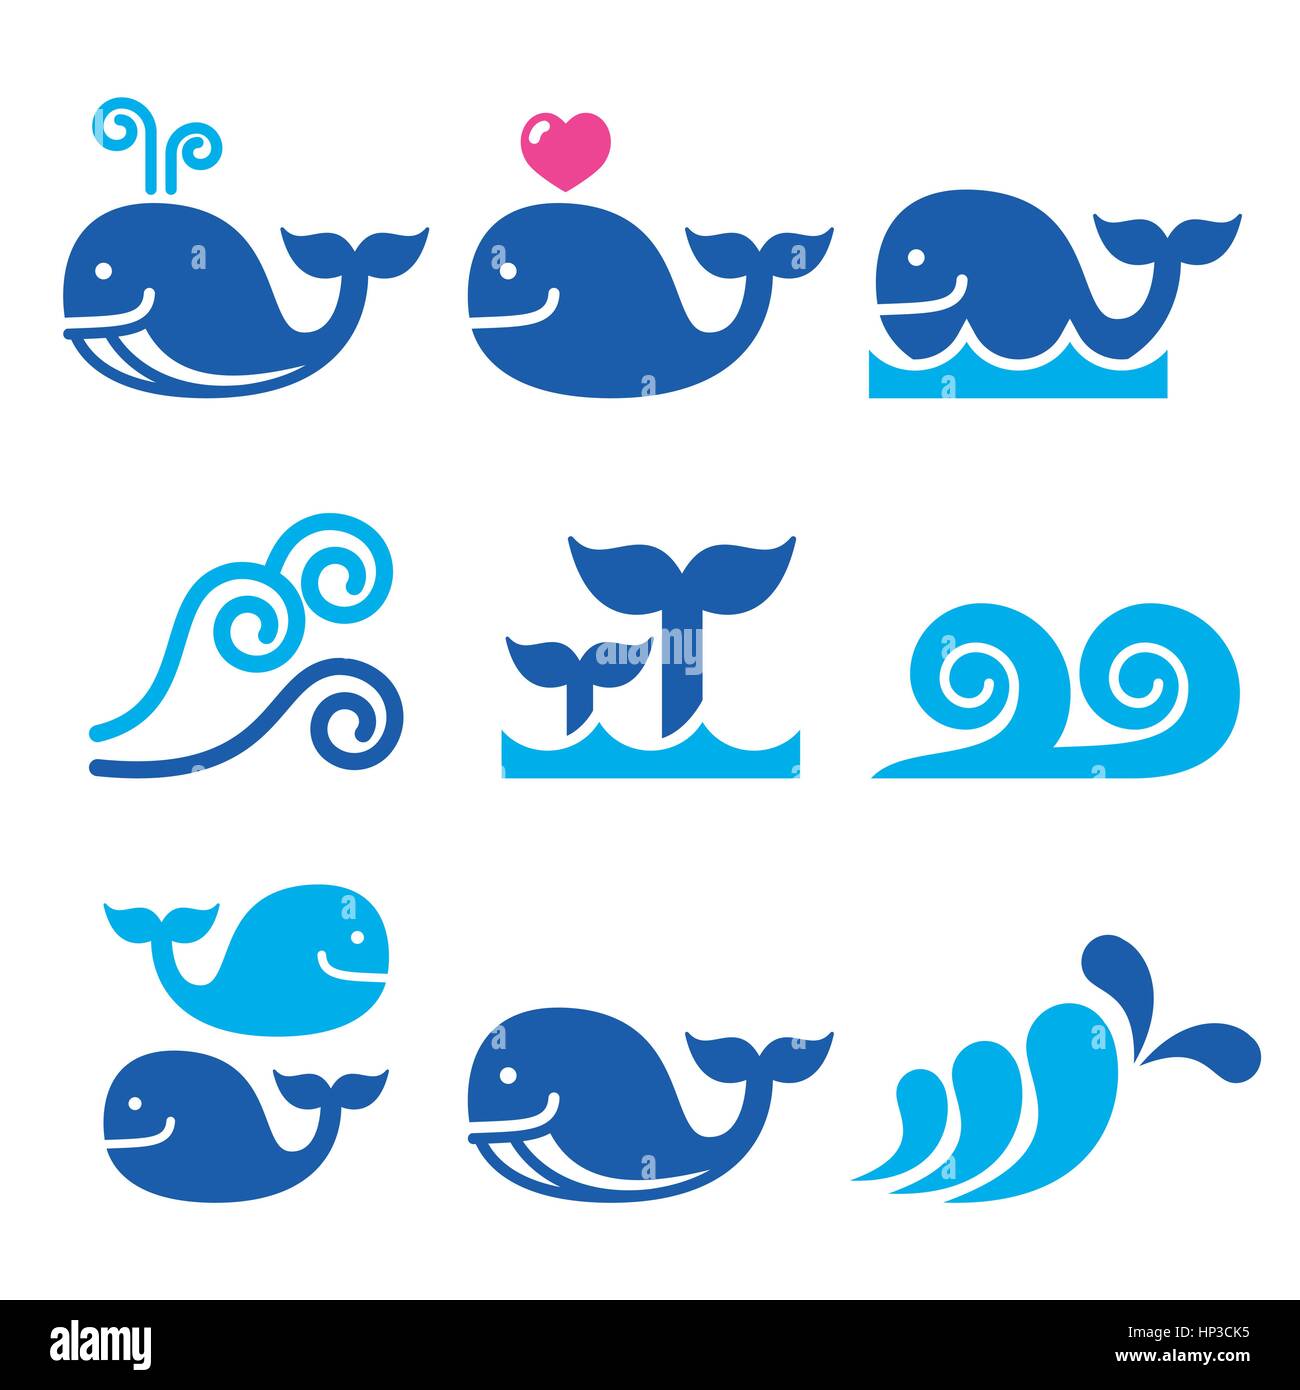 La mer, les baleines ou les vagues de l'océan blue icons set. Vector icons set isolated on white - Faune Illustration de Vecteur